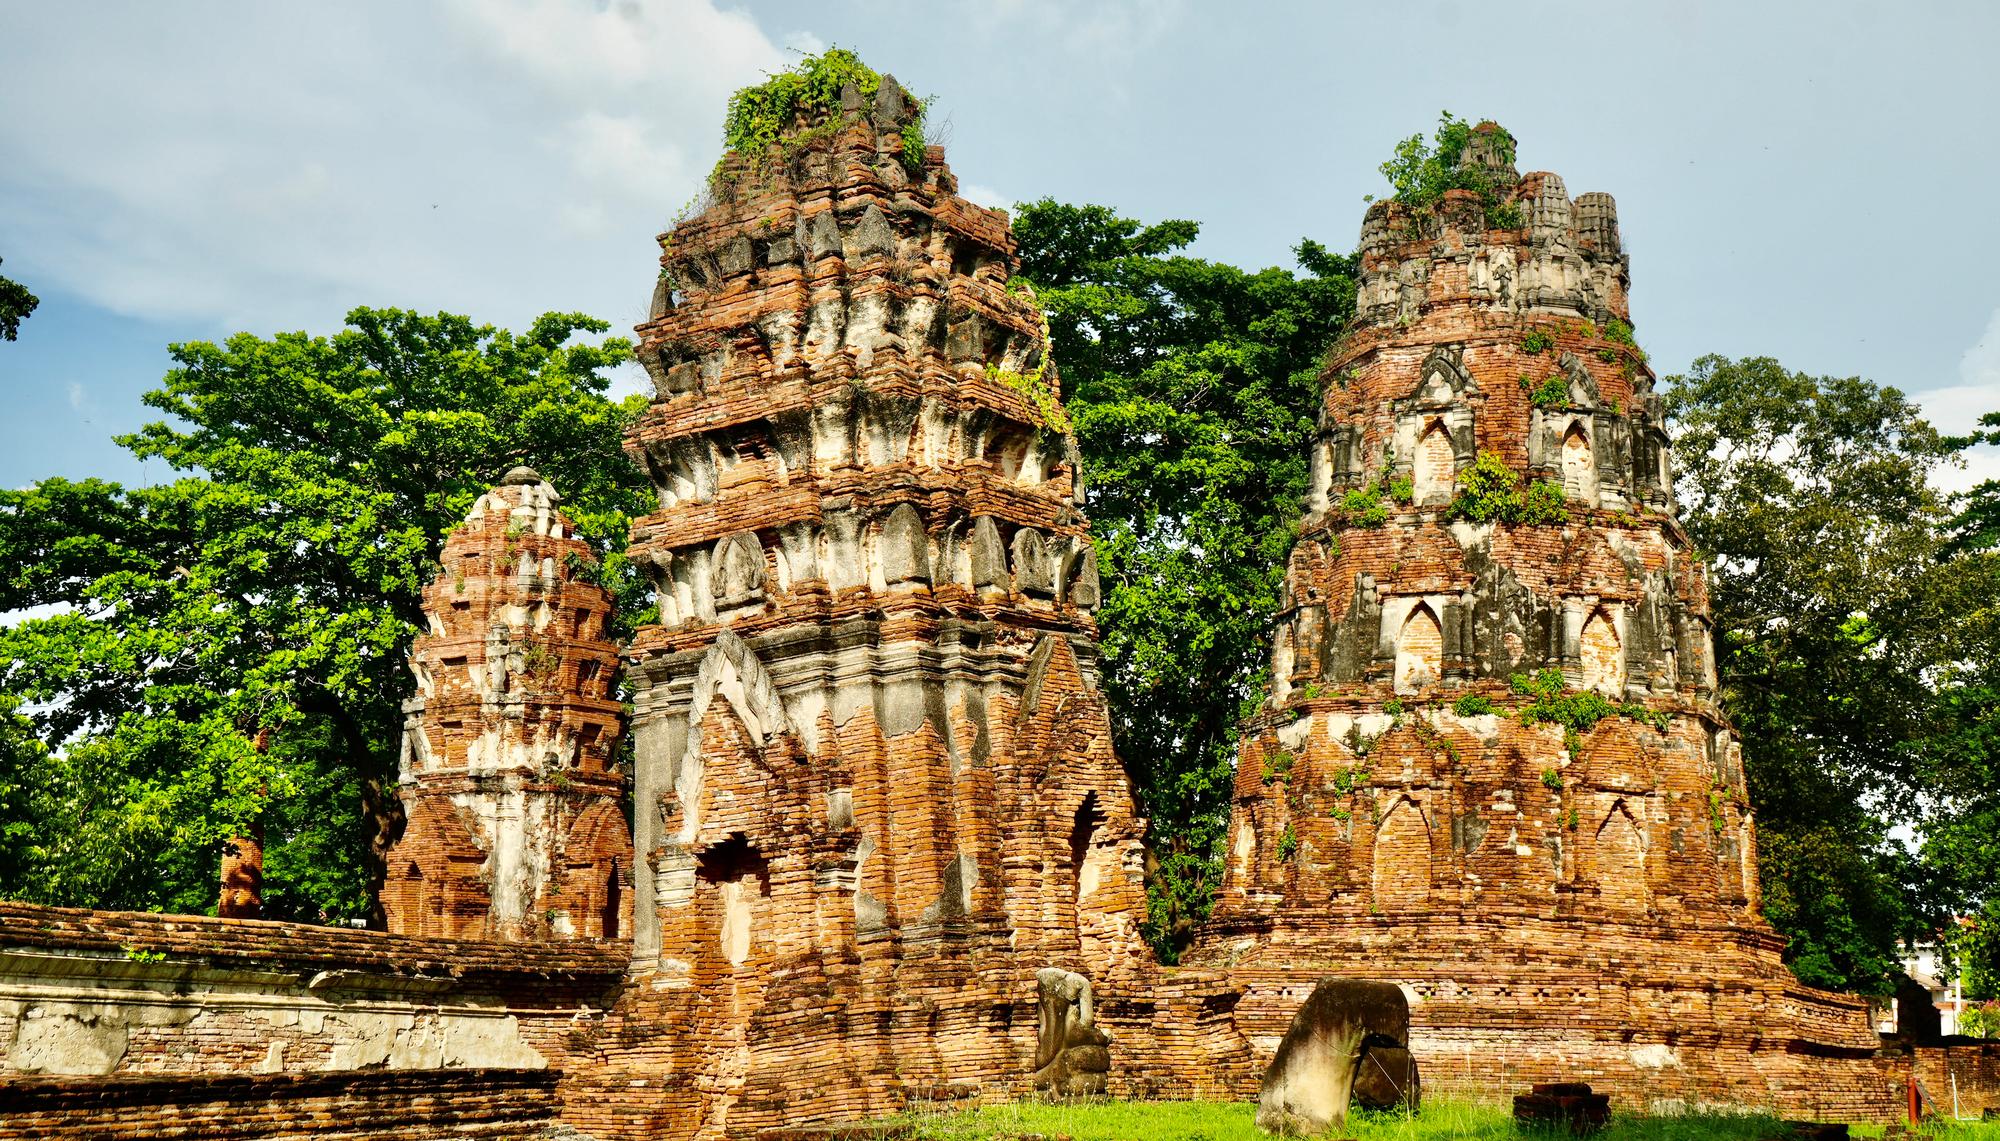 13th century Stupas